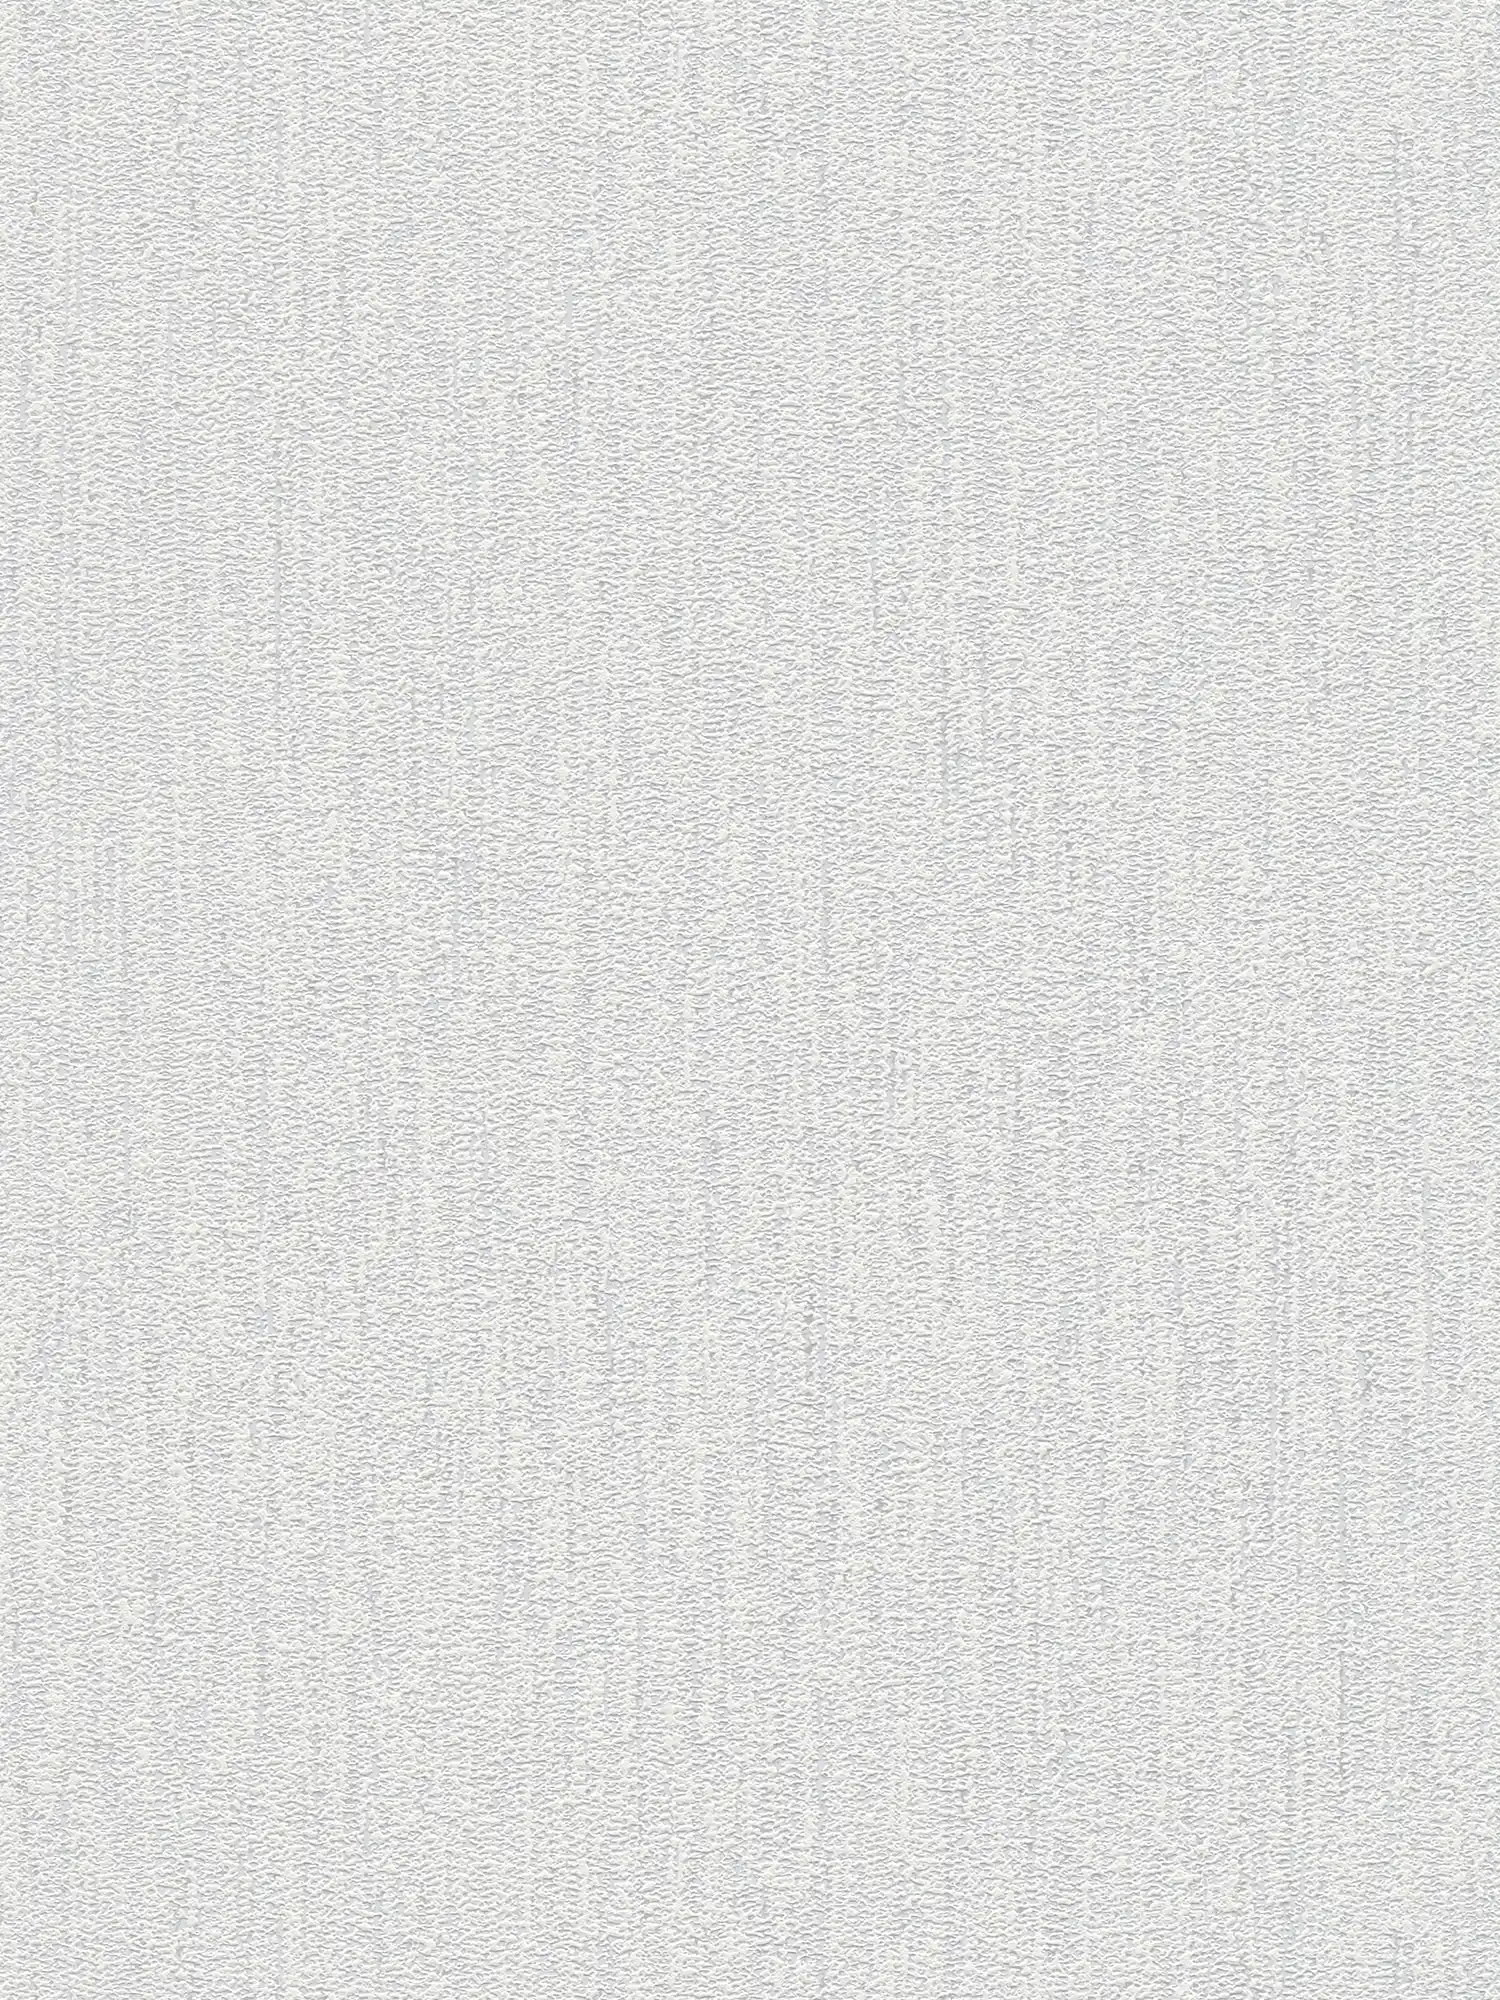 Einfarbige Tapete mit Gewebe Struktur – Weiß, Hellgrau
